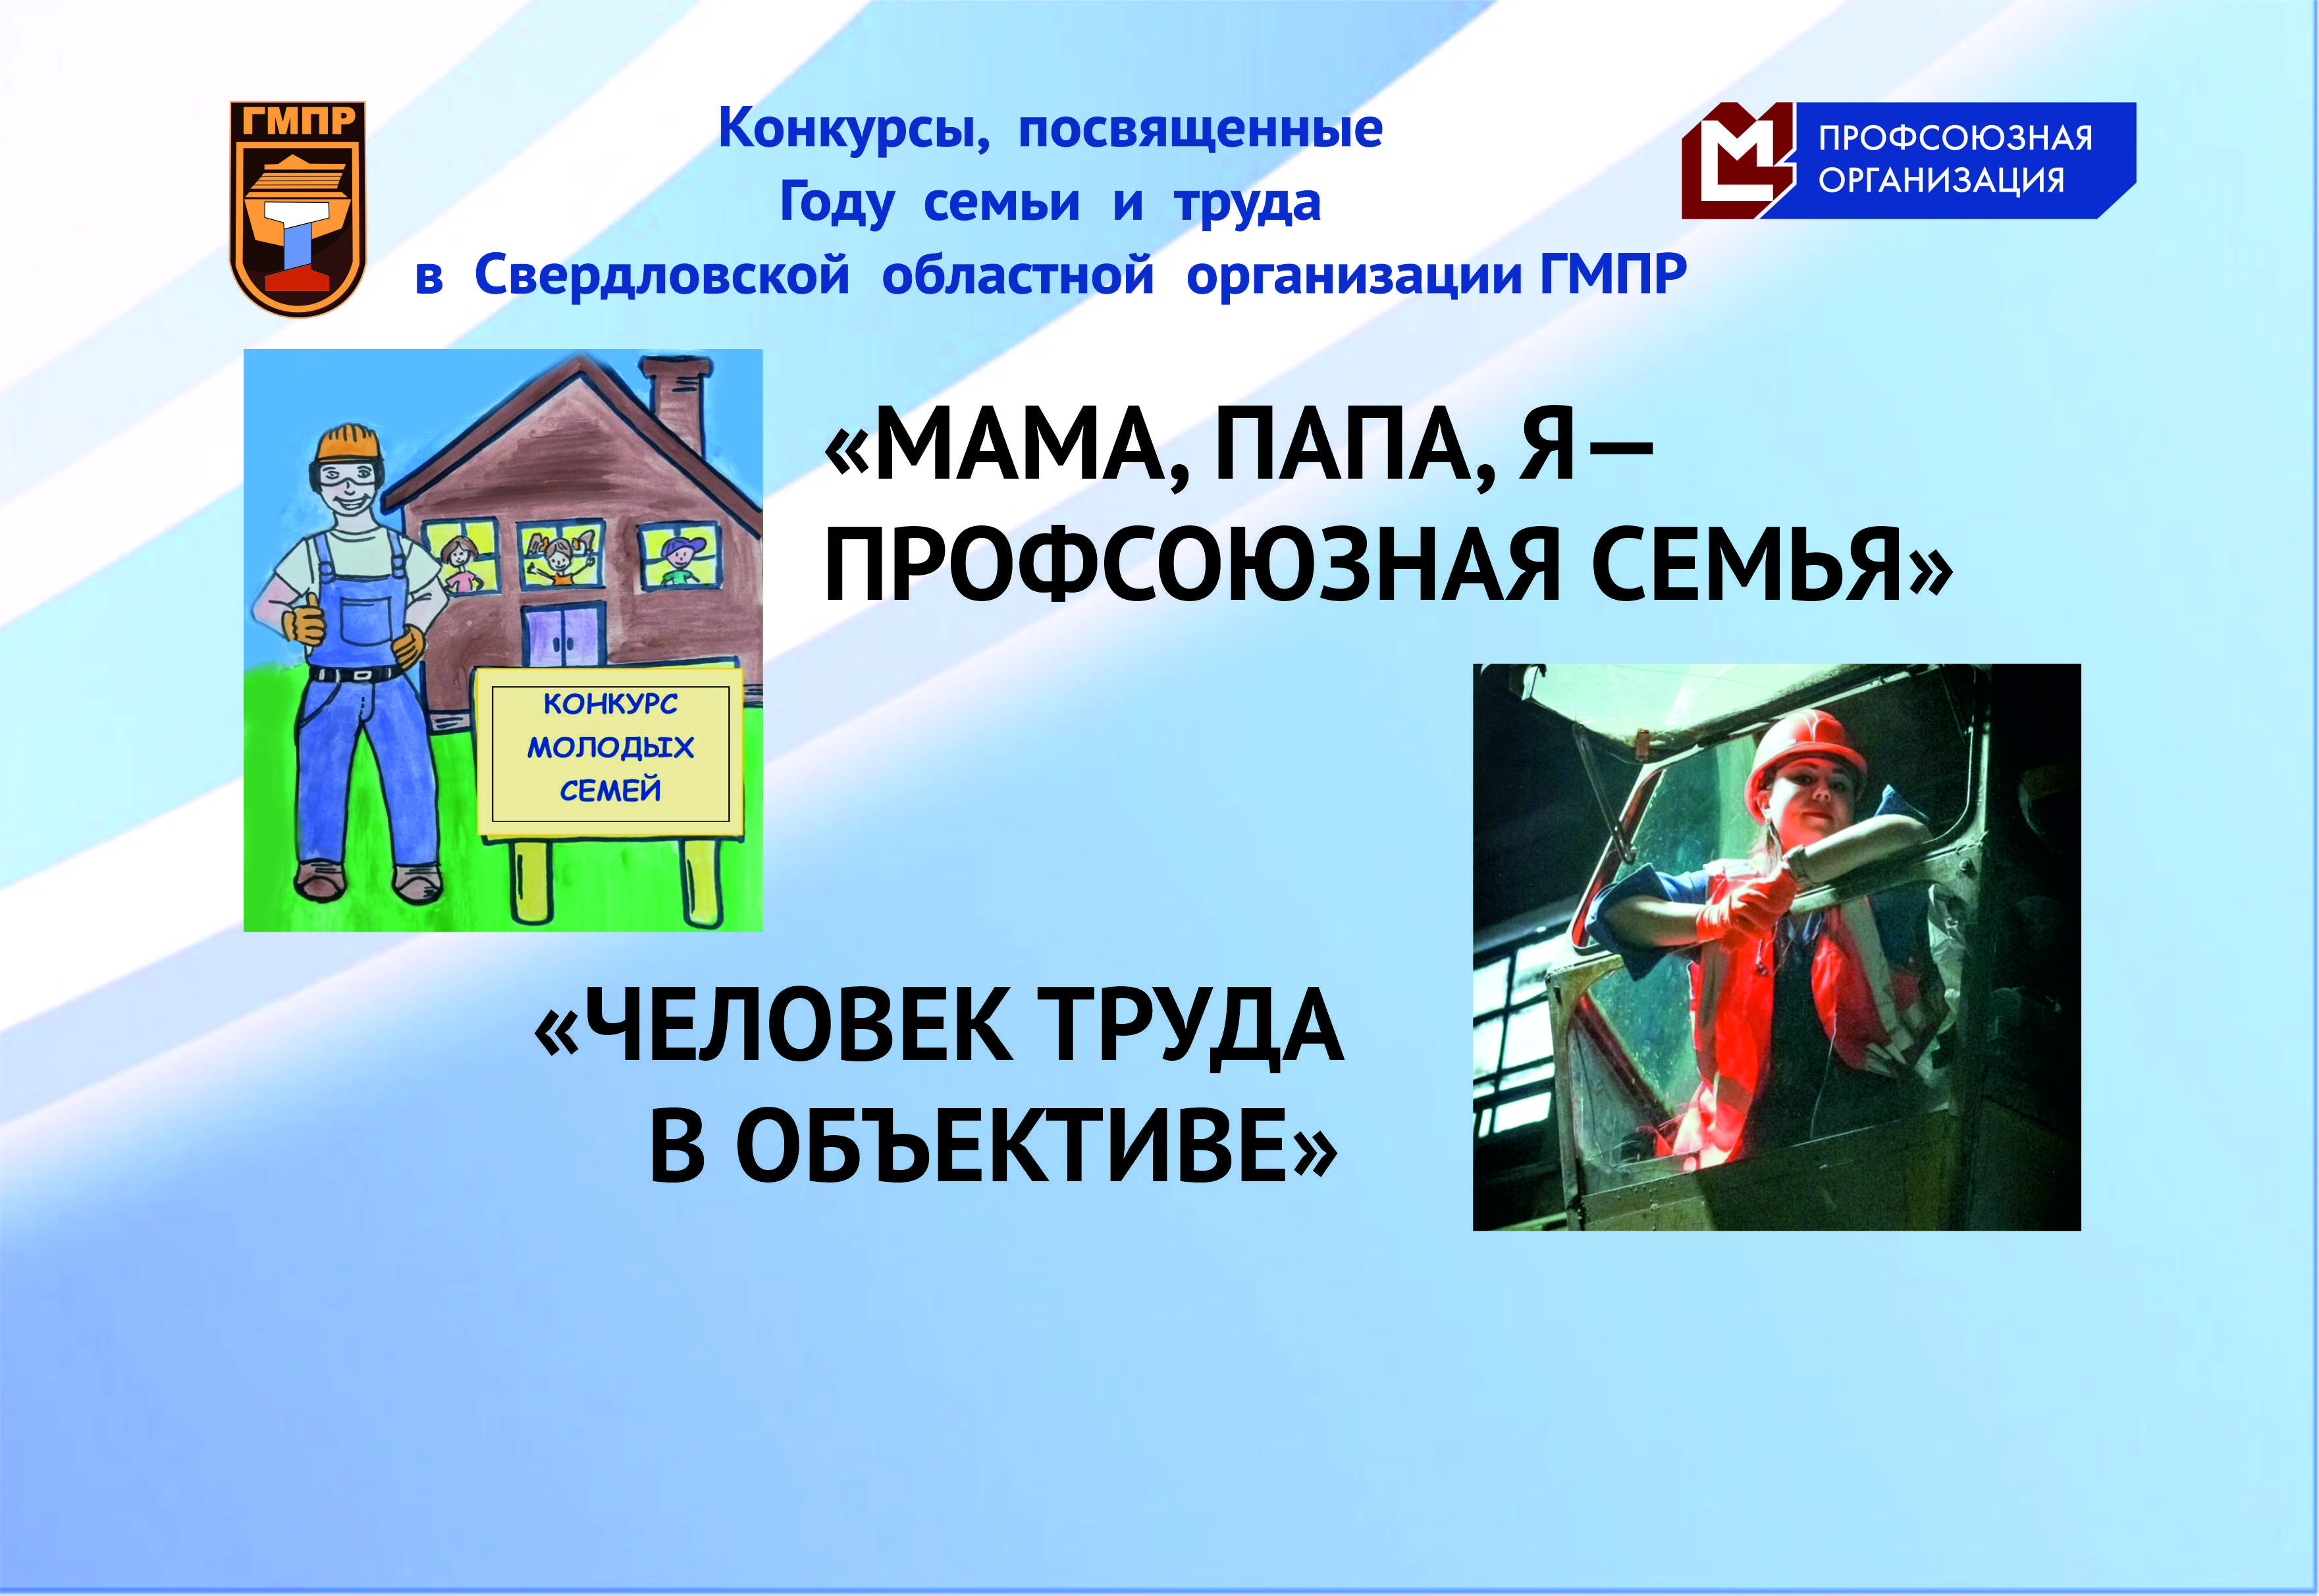 Конкурсы, посвященные Году семьи и труда в Свердловской областной организации ГМПР.